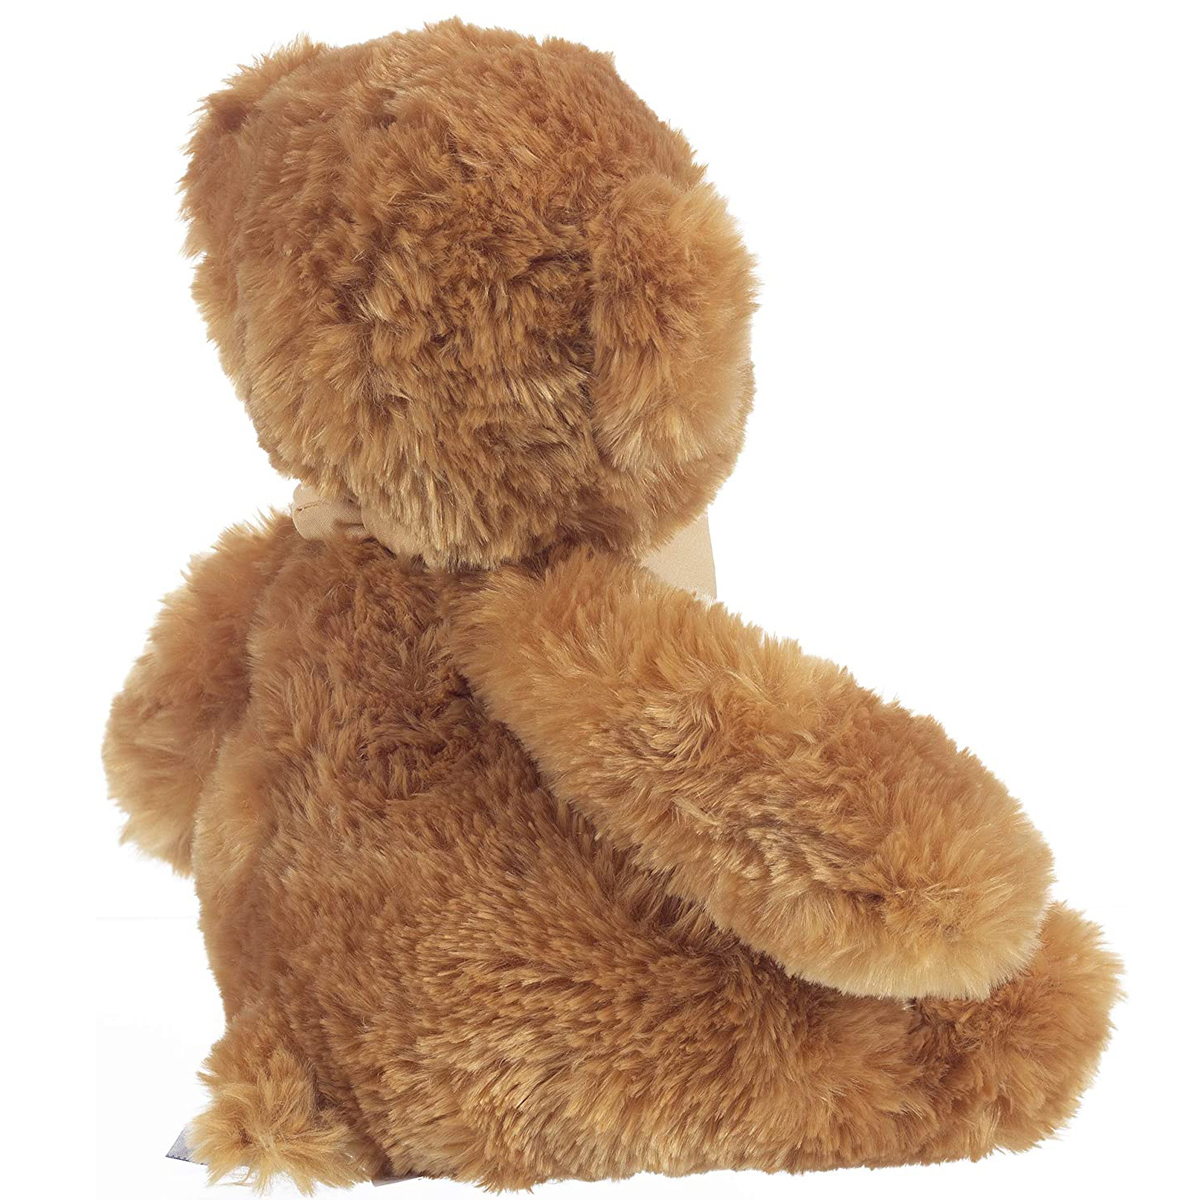 Teddy mit Halstuch, "Glücksbringer" - 25 cm (Höhe) - Teddybär - Plüschtier, Kuscheltier